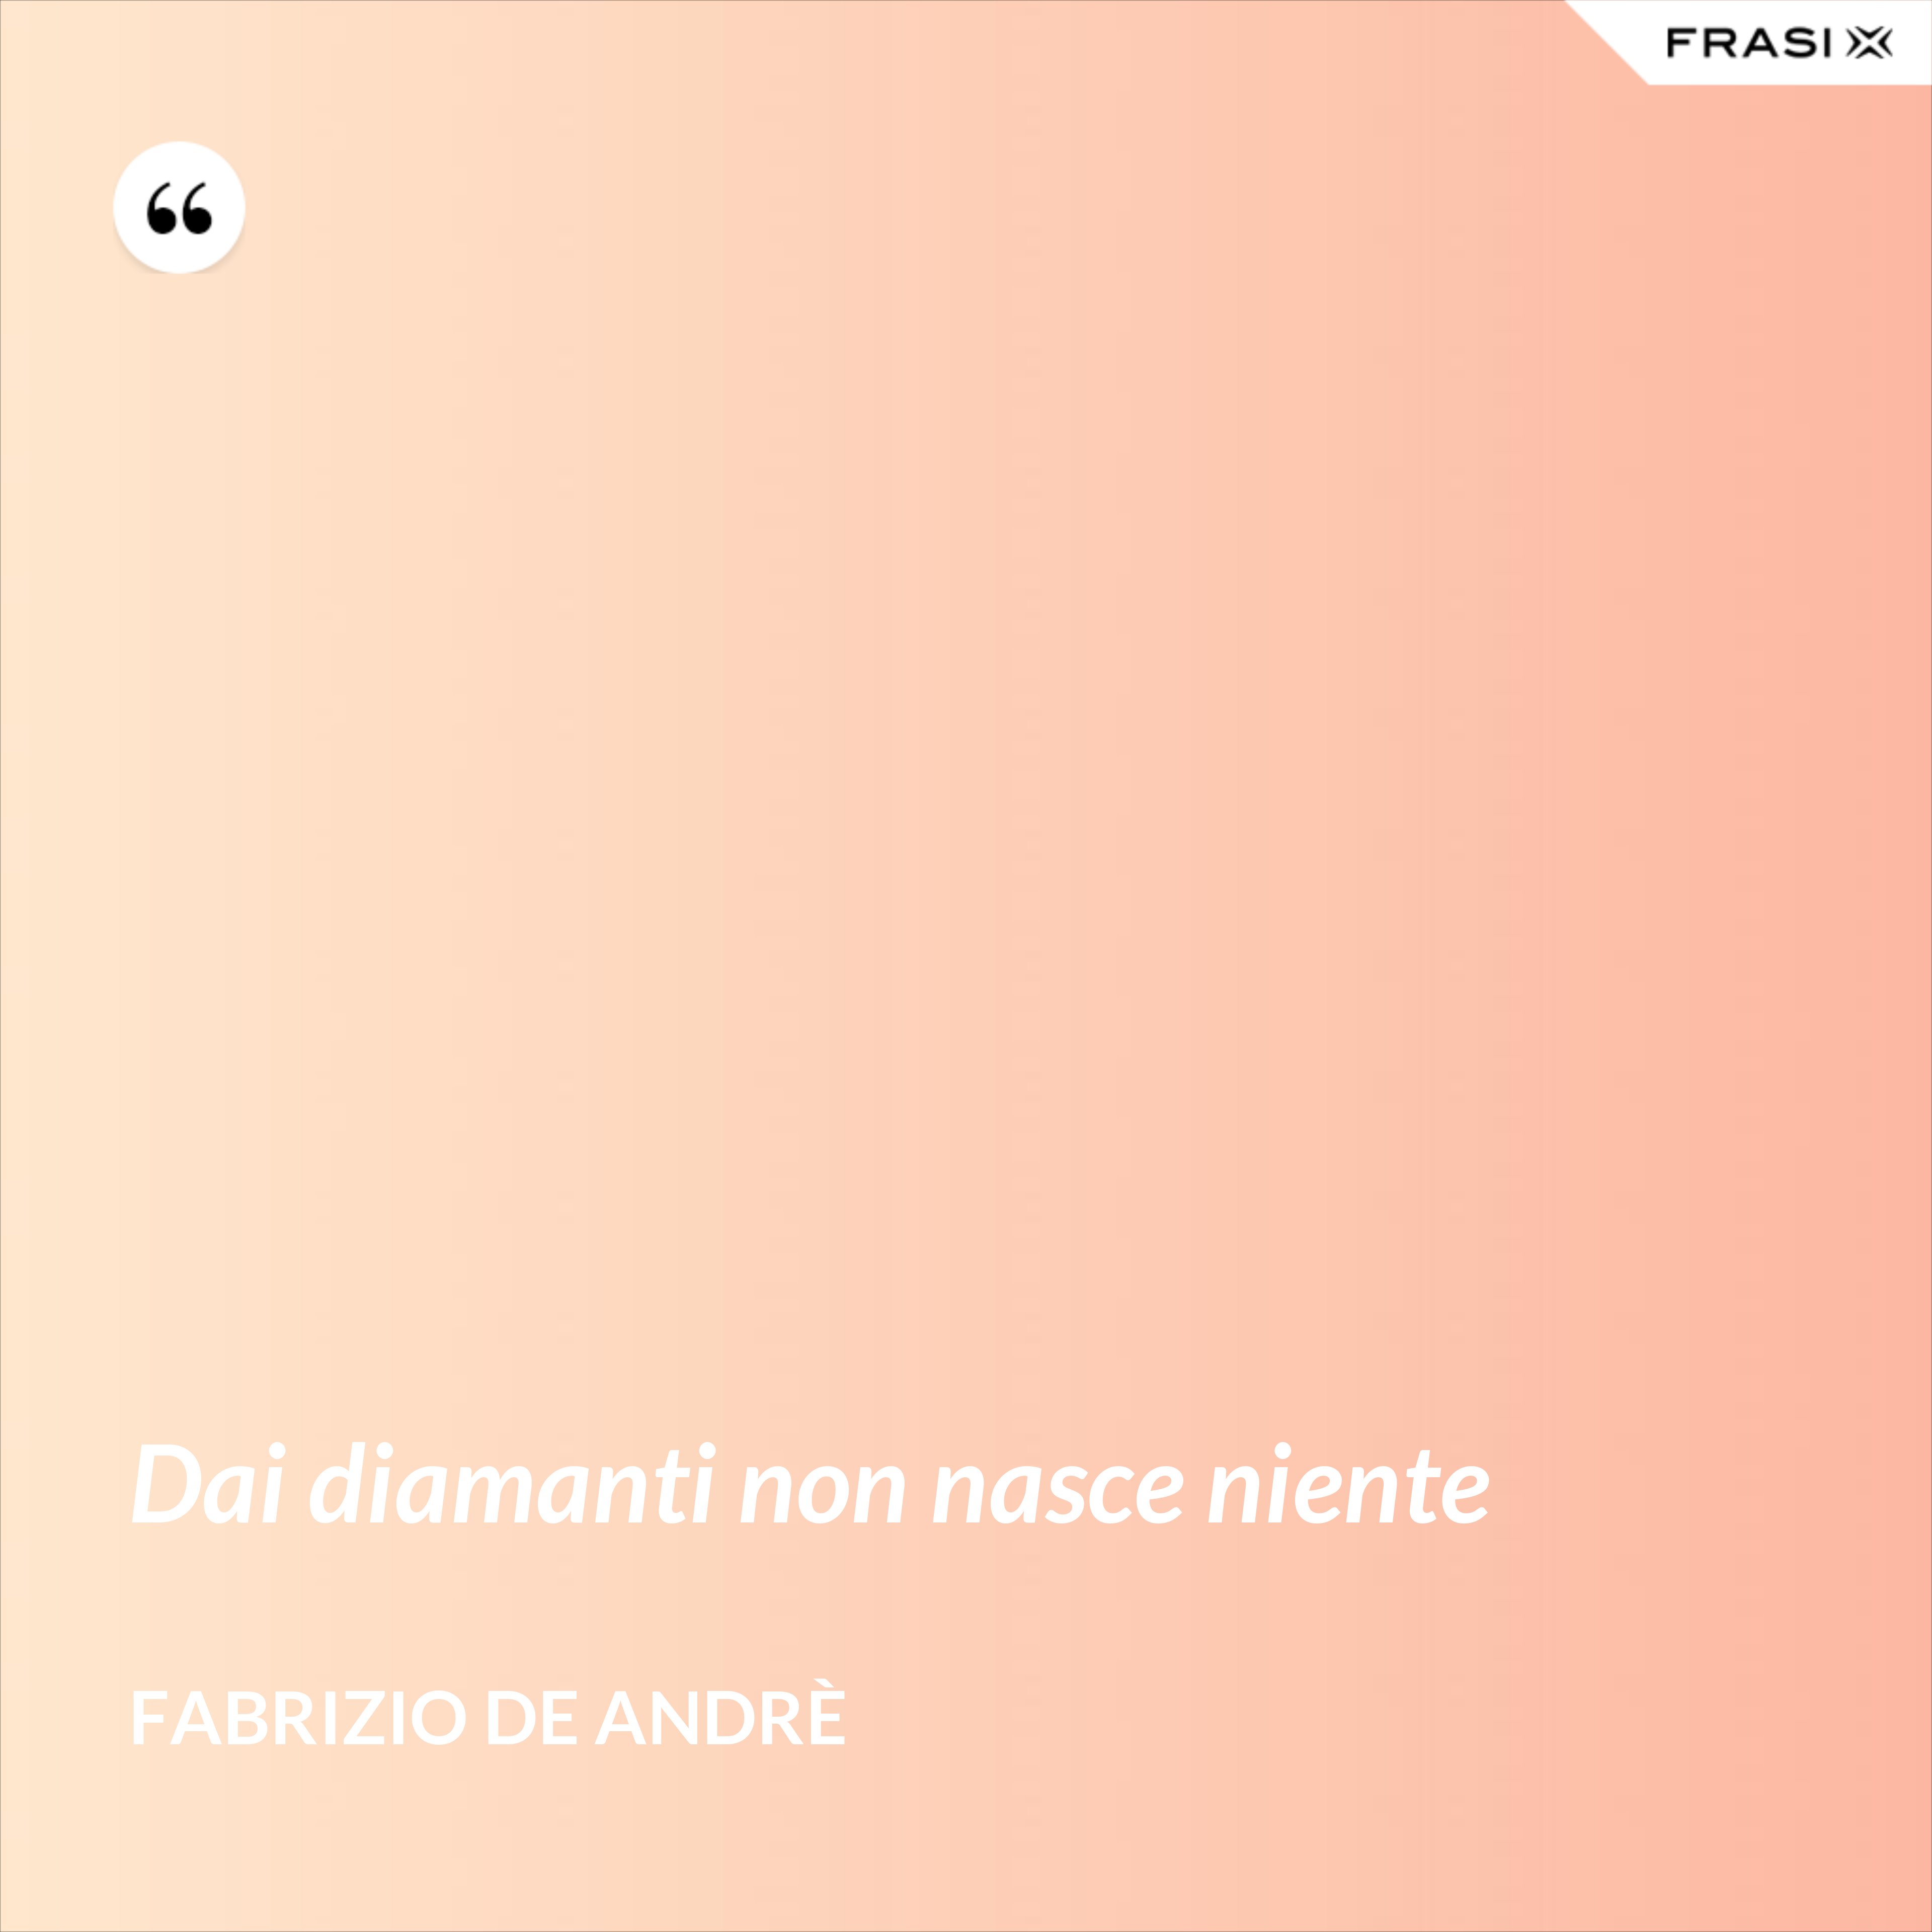 Dai diamanti non nasce niente - Fabrizio De Andrè